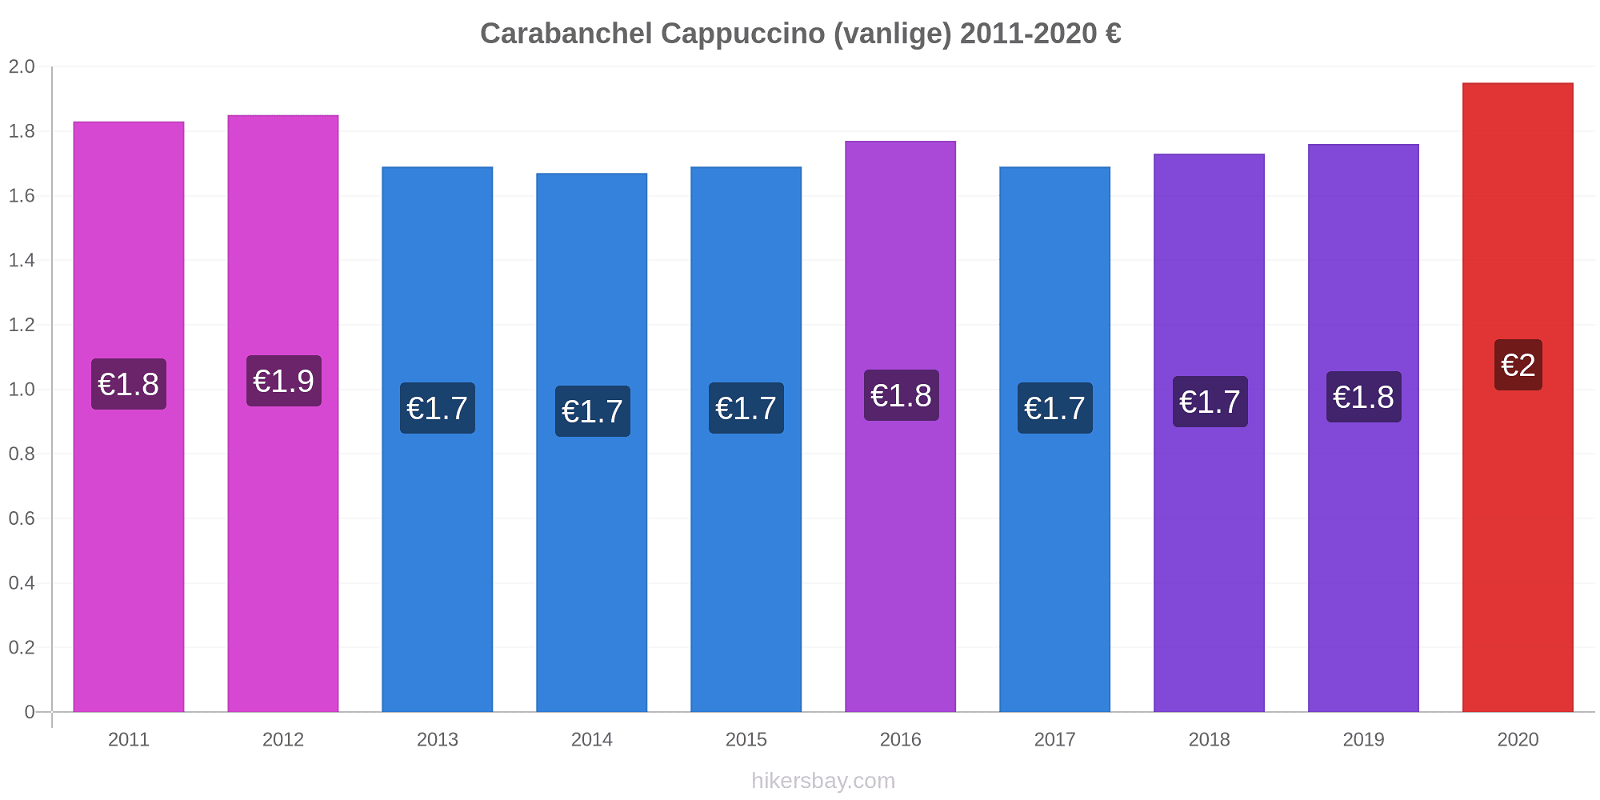 Carabanchel prisendringer Cappuccino (vanlige) hikersbay.com